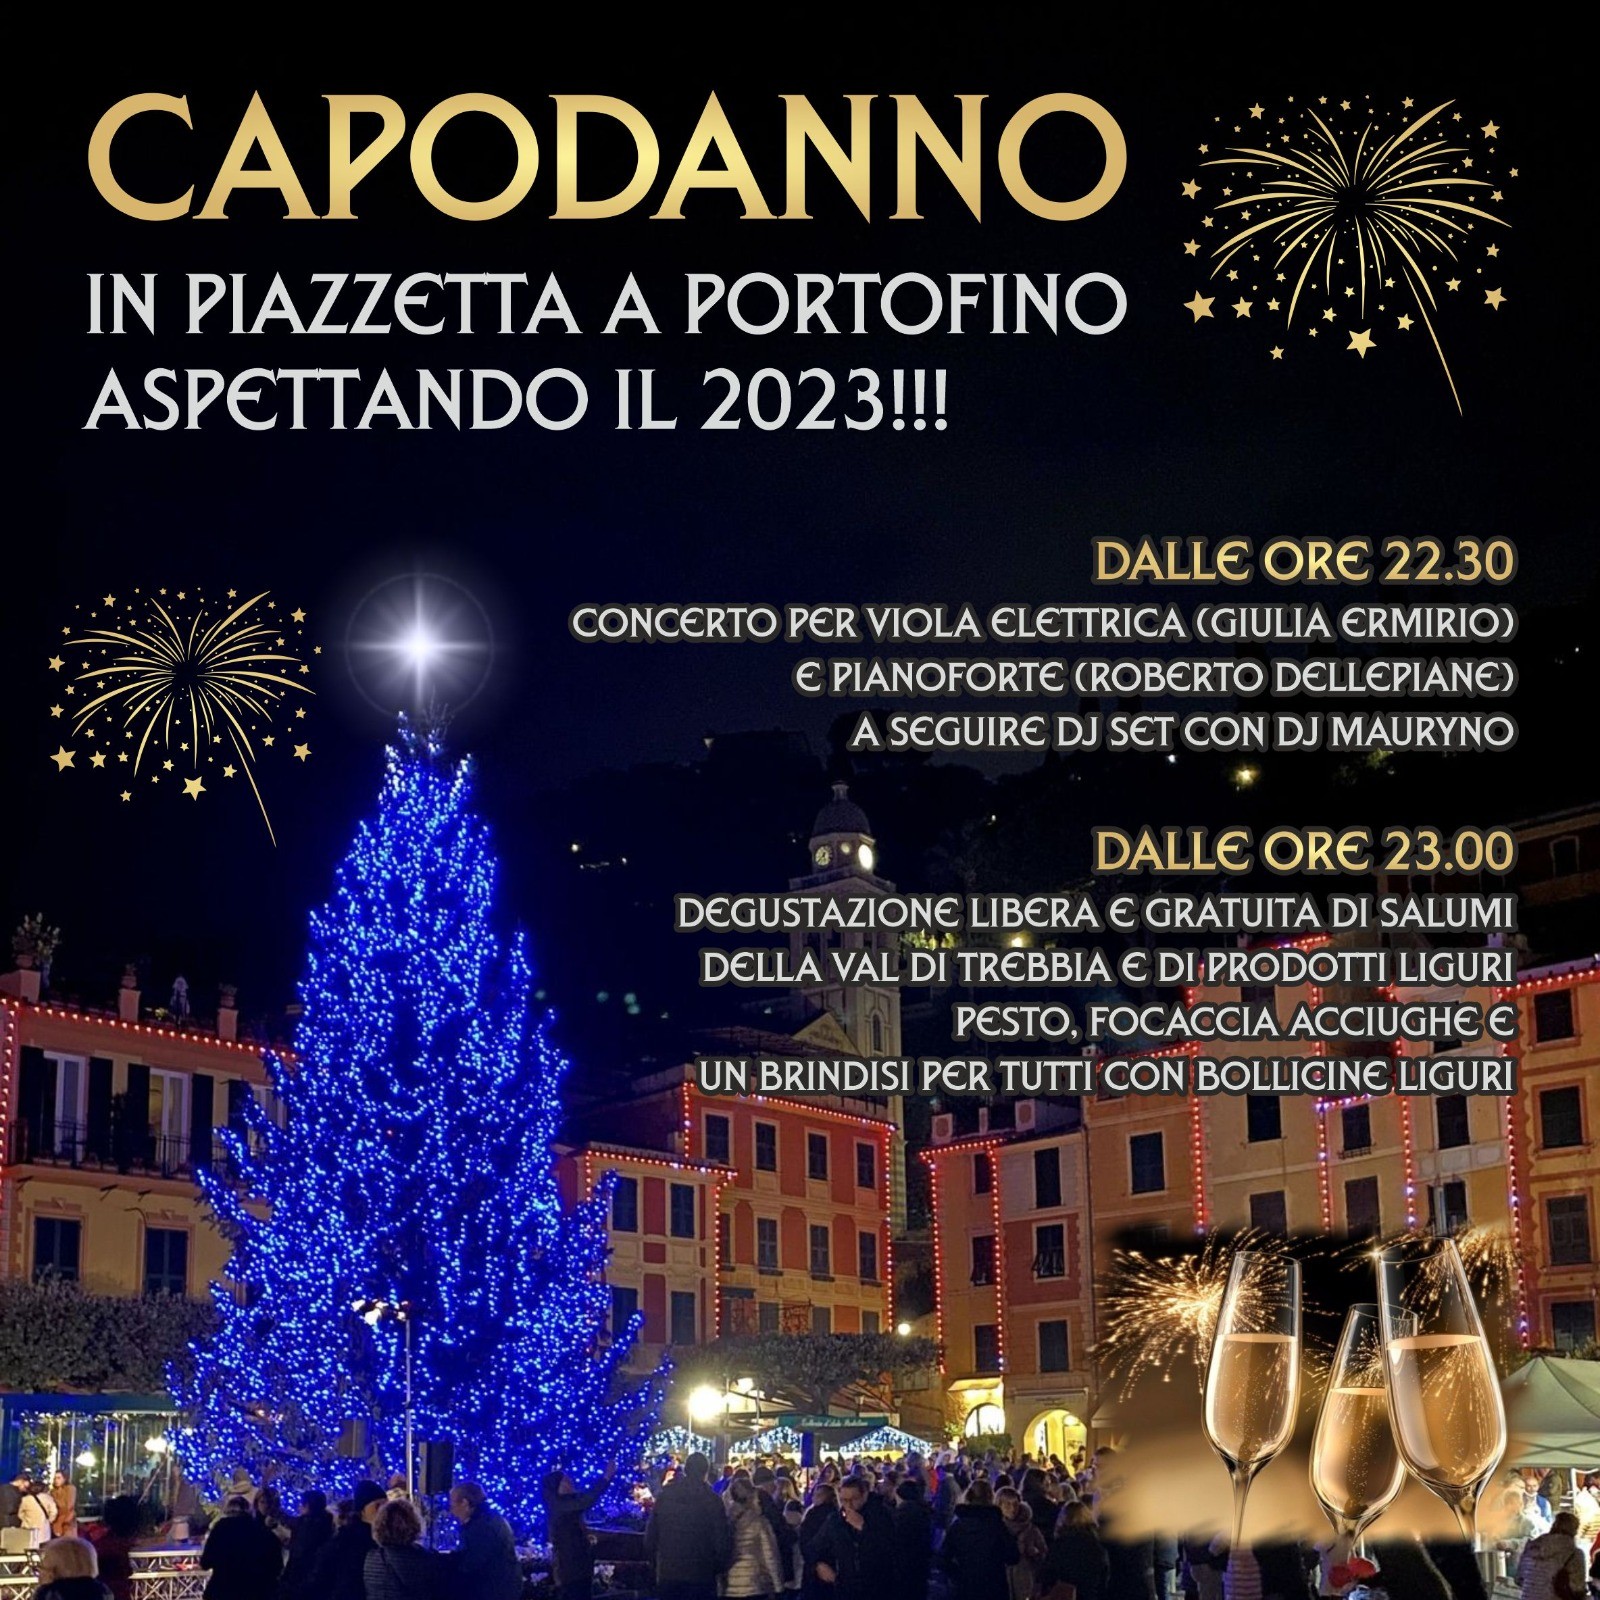 Comune di Portofino - Aspettando il 2023 - Capodanno in Piazzetta